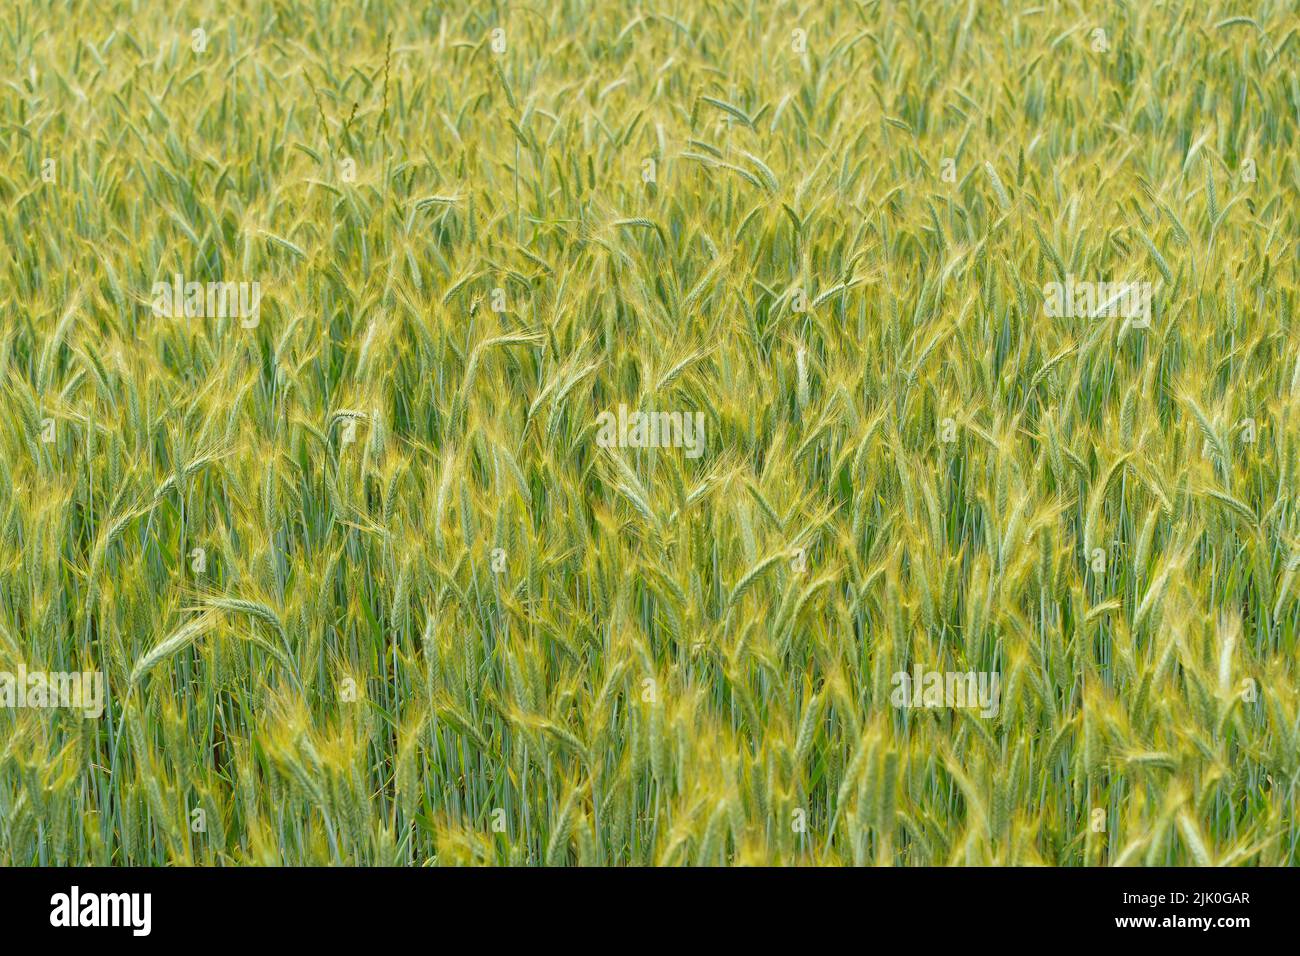 Campo de trigo en verano al atardecer. Orejas maduras de trigo en la granja durante la cosecha de verano. Concepto de agricultura, cereales y naturaleza ecológica. Fotografías de alta calidad Foto de stock